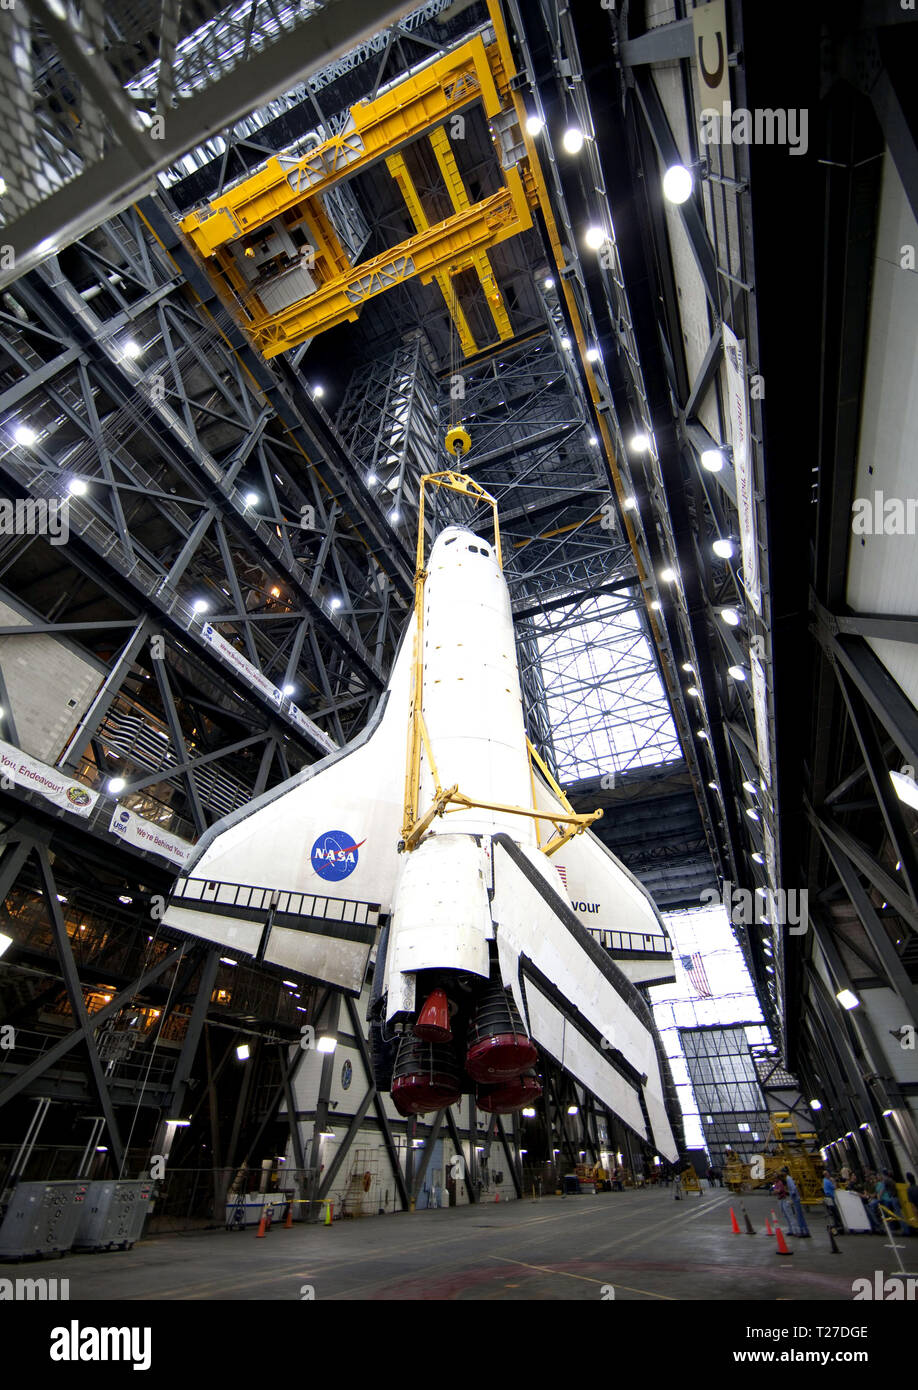 CAPE CANAVERAL - ein großes, gelbes, Metall schlinge Aufzüge Shuttle Endeavour aus der Gang in eine Bucht des Vehicle Assembly Building des NASA Kennedy Space Center in Florida. In der bucht, wird der Raumtransporter an seinem externen Kraftstofftank und Solid Rocket Booster angeschlossen werden. Endeavour ist gezielt zu Kennedy's Launch Pad 39A für seine letzten Mission STS-134, am 9. März. Stockfoto